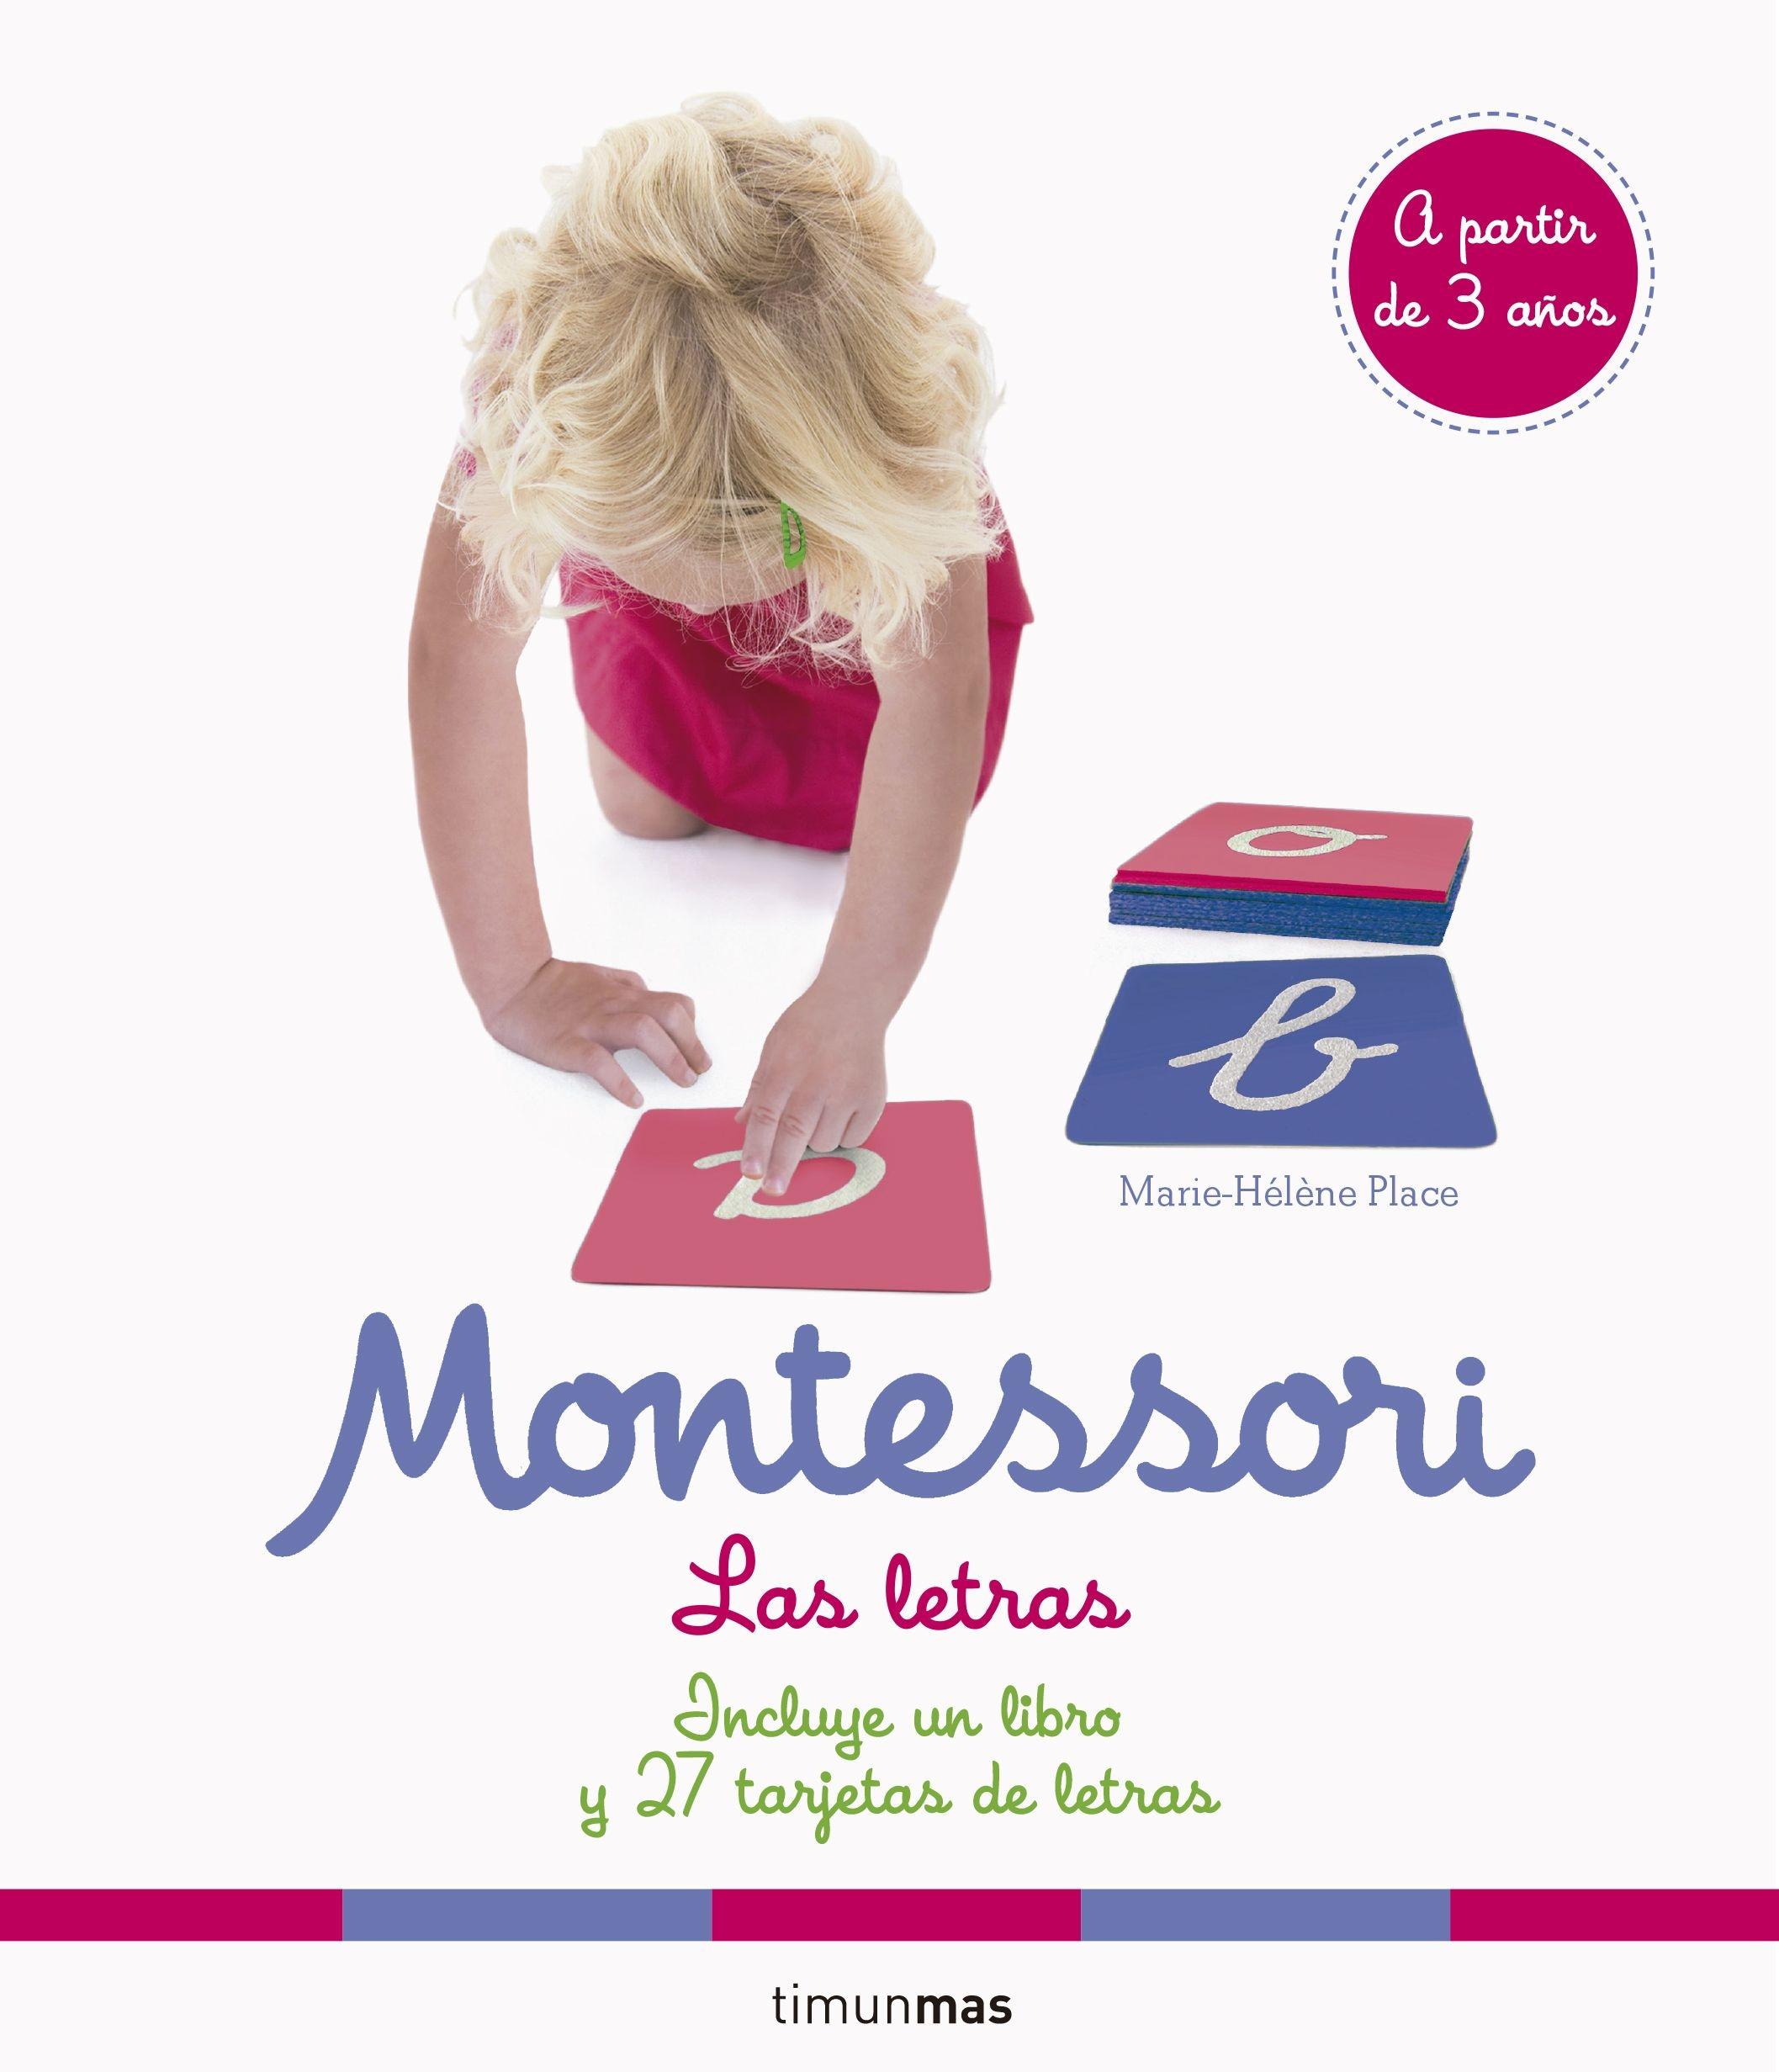 Montessori. Las letras "Incluye un libro y 27 tarjetas de letras". 